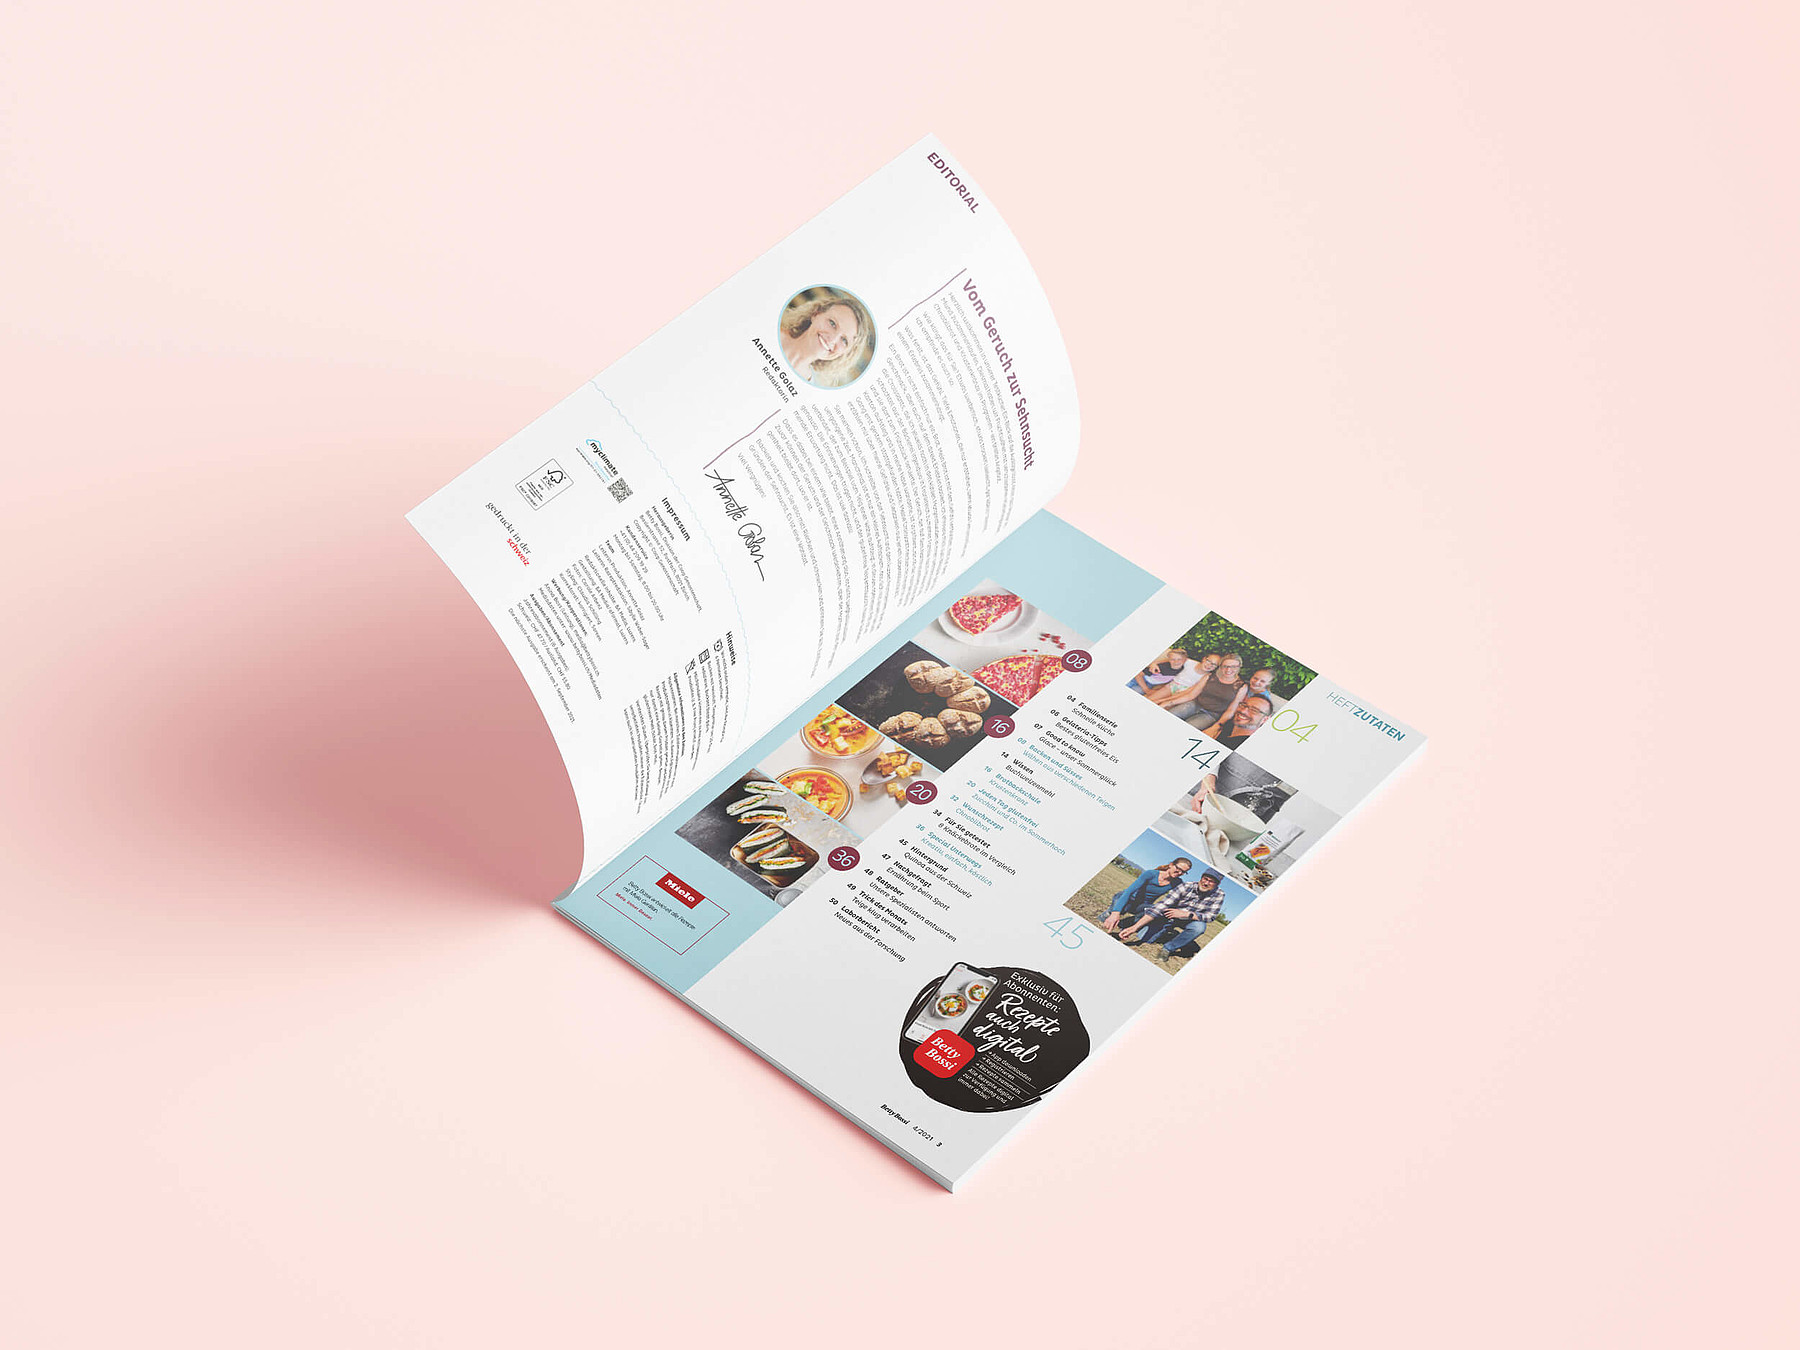 Eine aufgeschlagene Ausgabe des Magazins «Glutenfrei leben» zeigt das Editorial und das Inhaltsverzeichnis